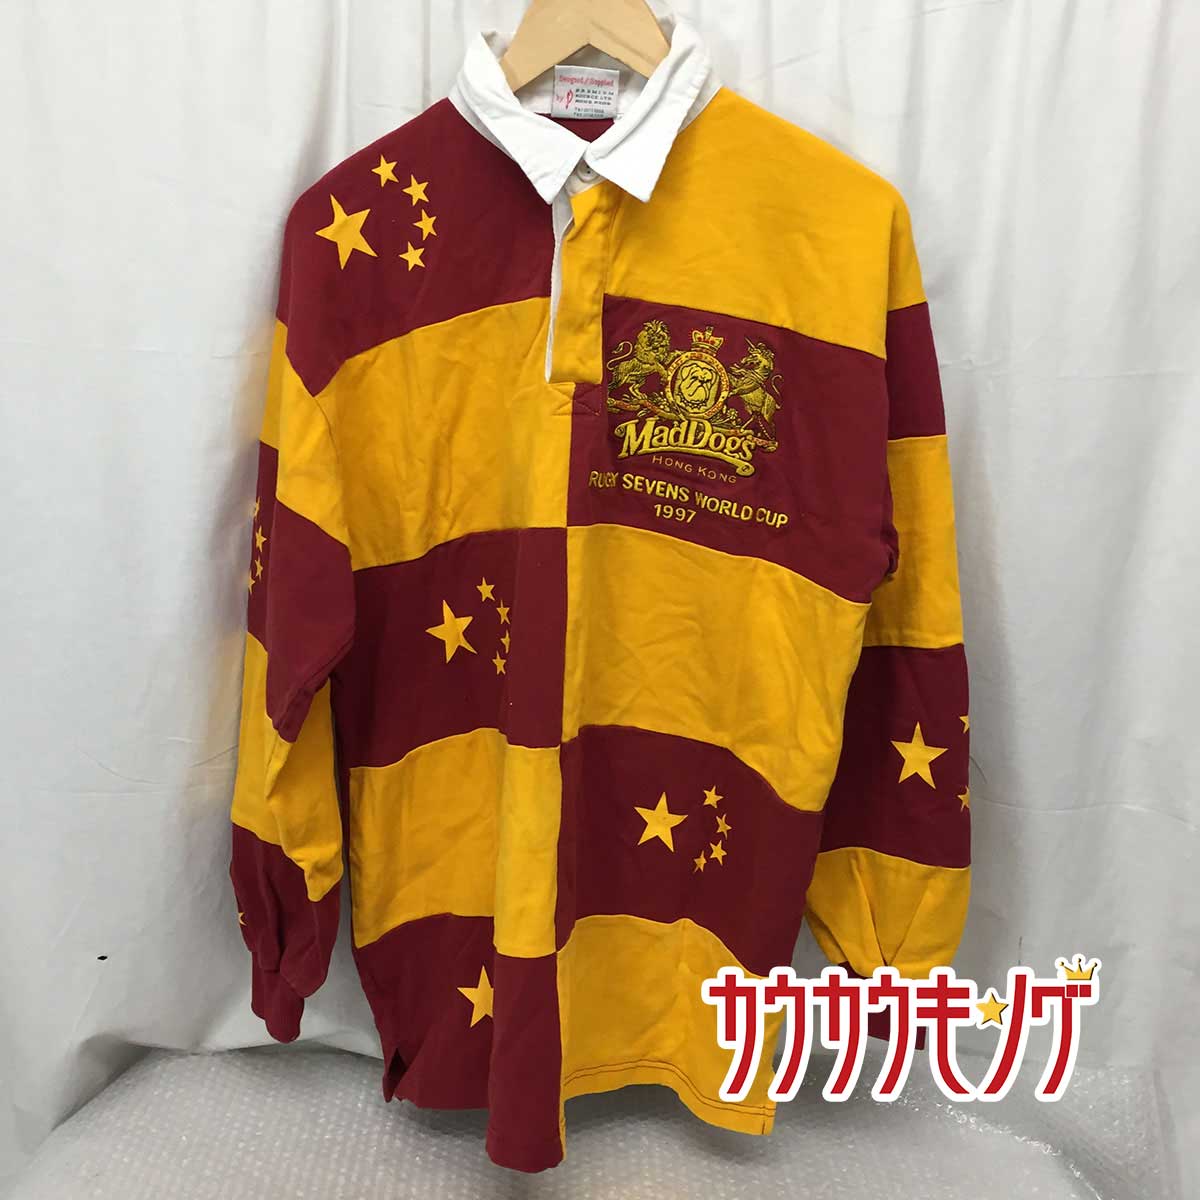 【中古】MadDoes HONG KONG ワールド ラグビー セブンズ シリーズ 1997 香港 長袖 ポロシャツ 40 メンズ ラグビー ウェア